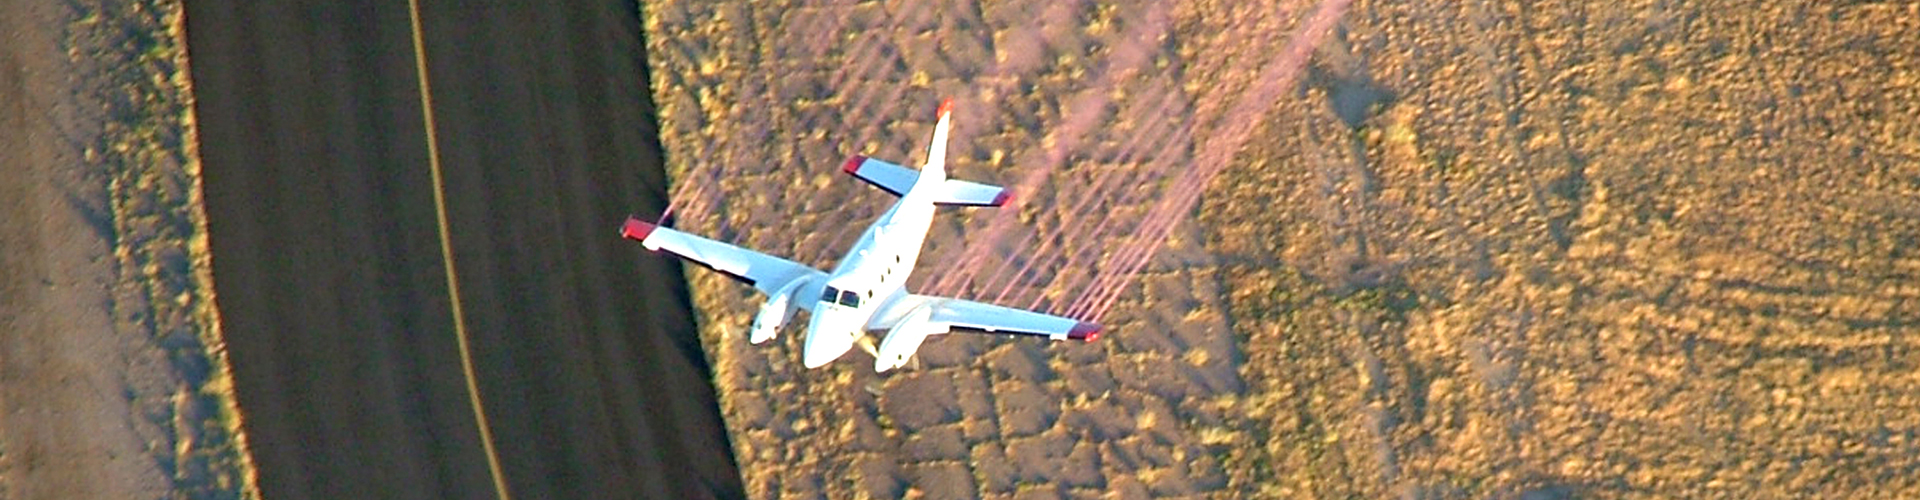 Beechcraft King Air 90 performing aerial oil spill response